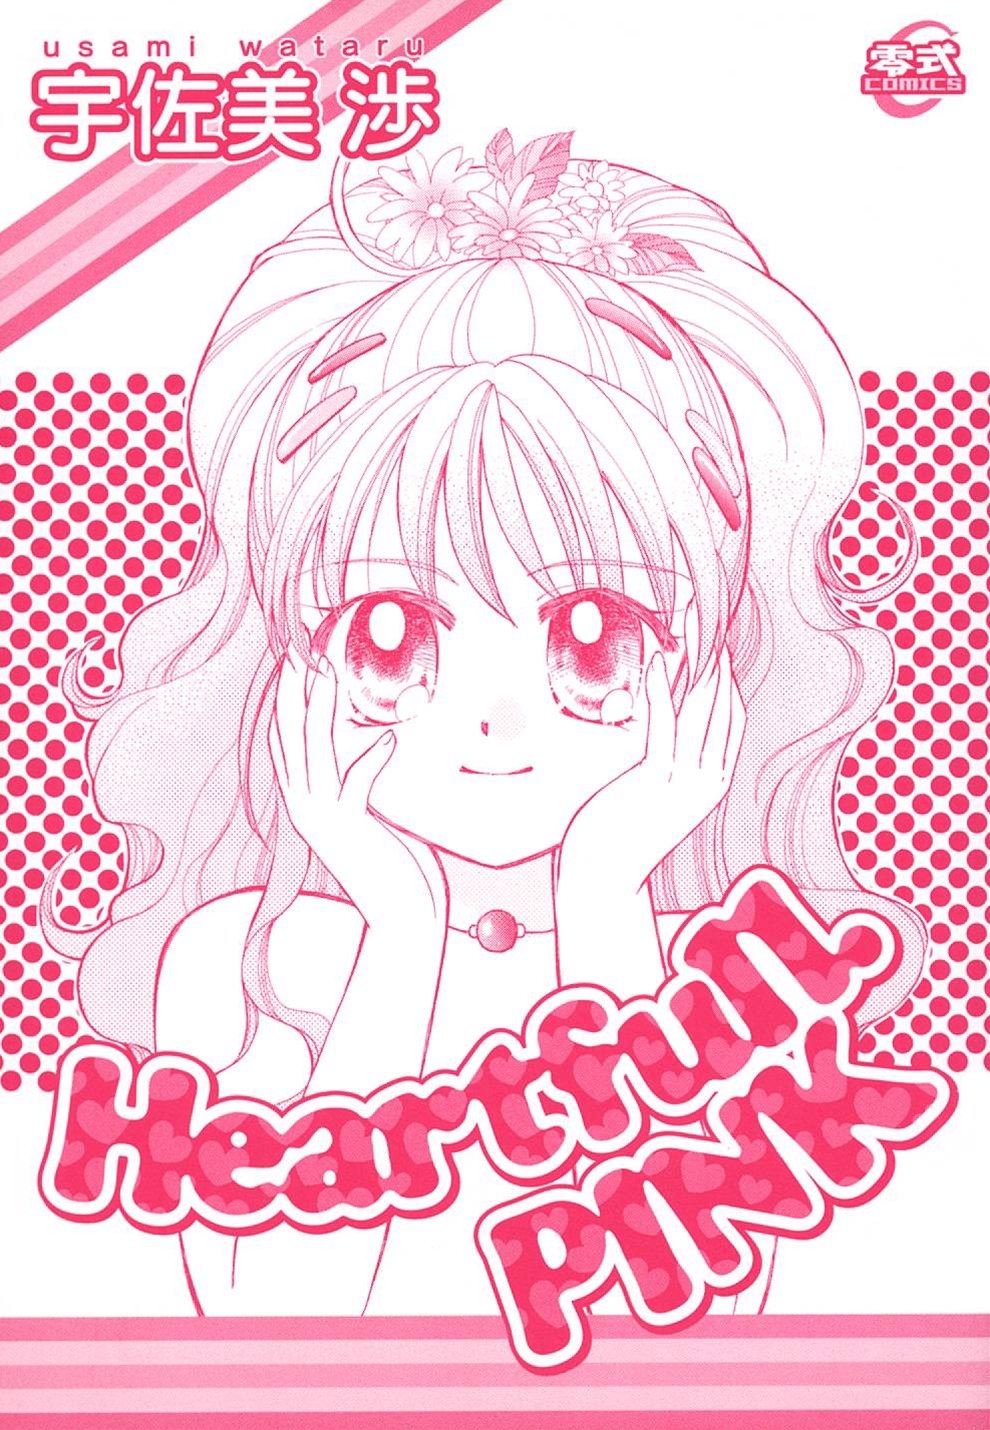 [Usami Wataru] Heartfull Pink 2